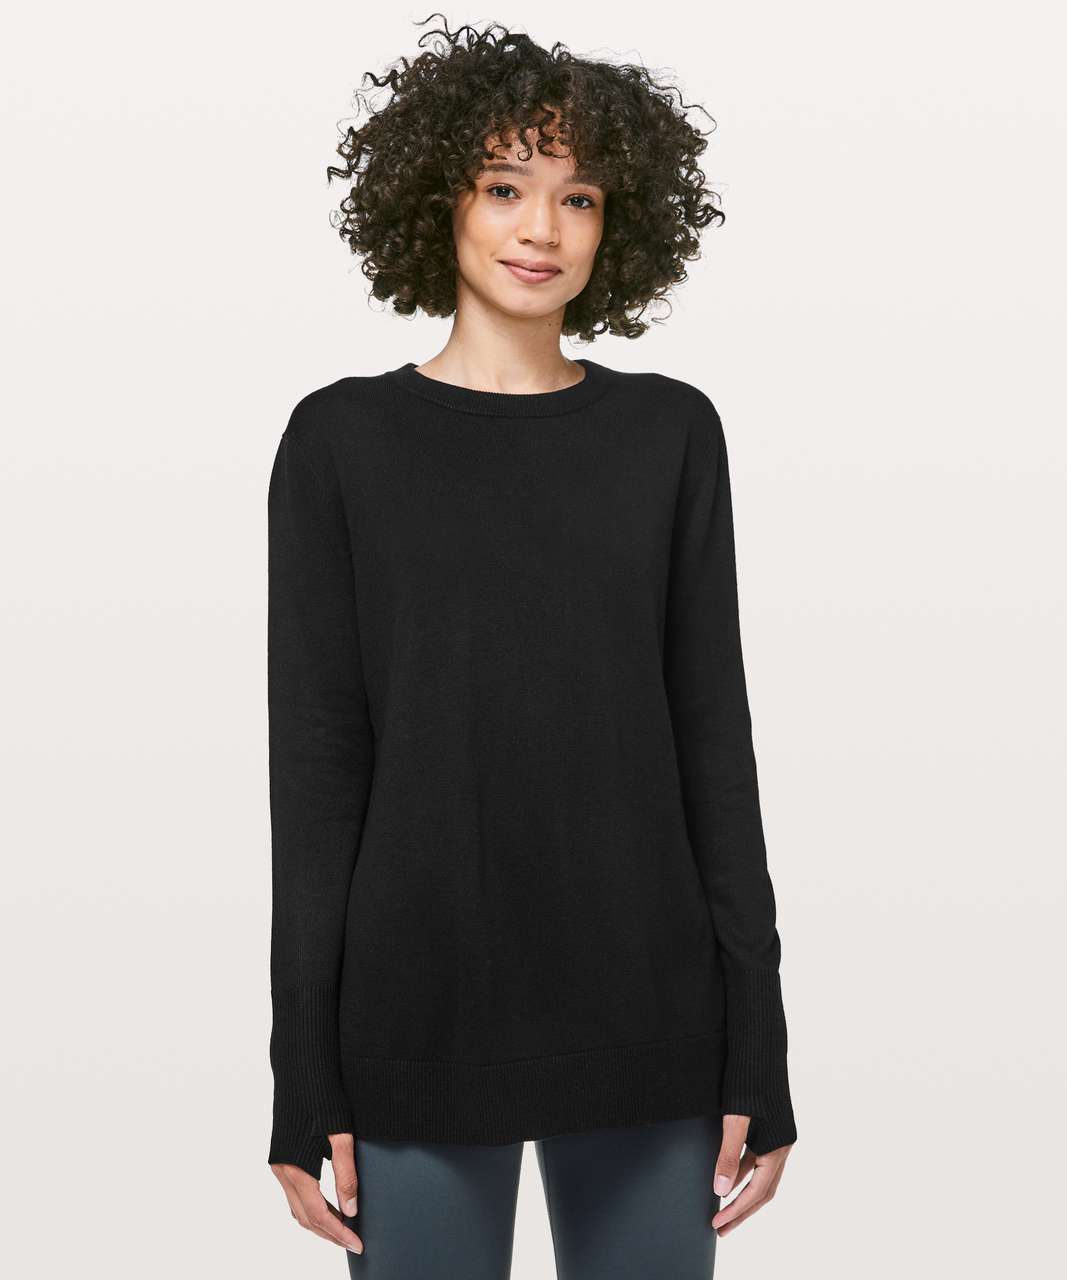 Lululemon Women's Black At Ease Hoodie Sweatshirt Size 2 N60416 Long Sleeve  Top